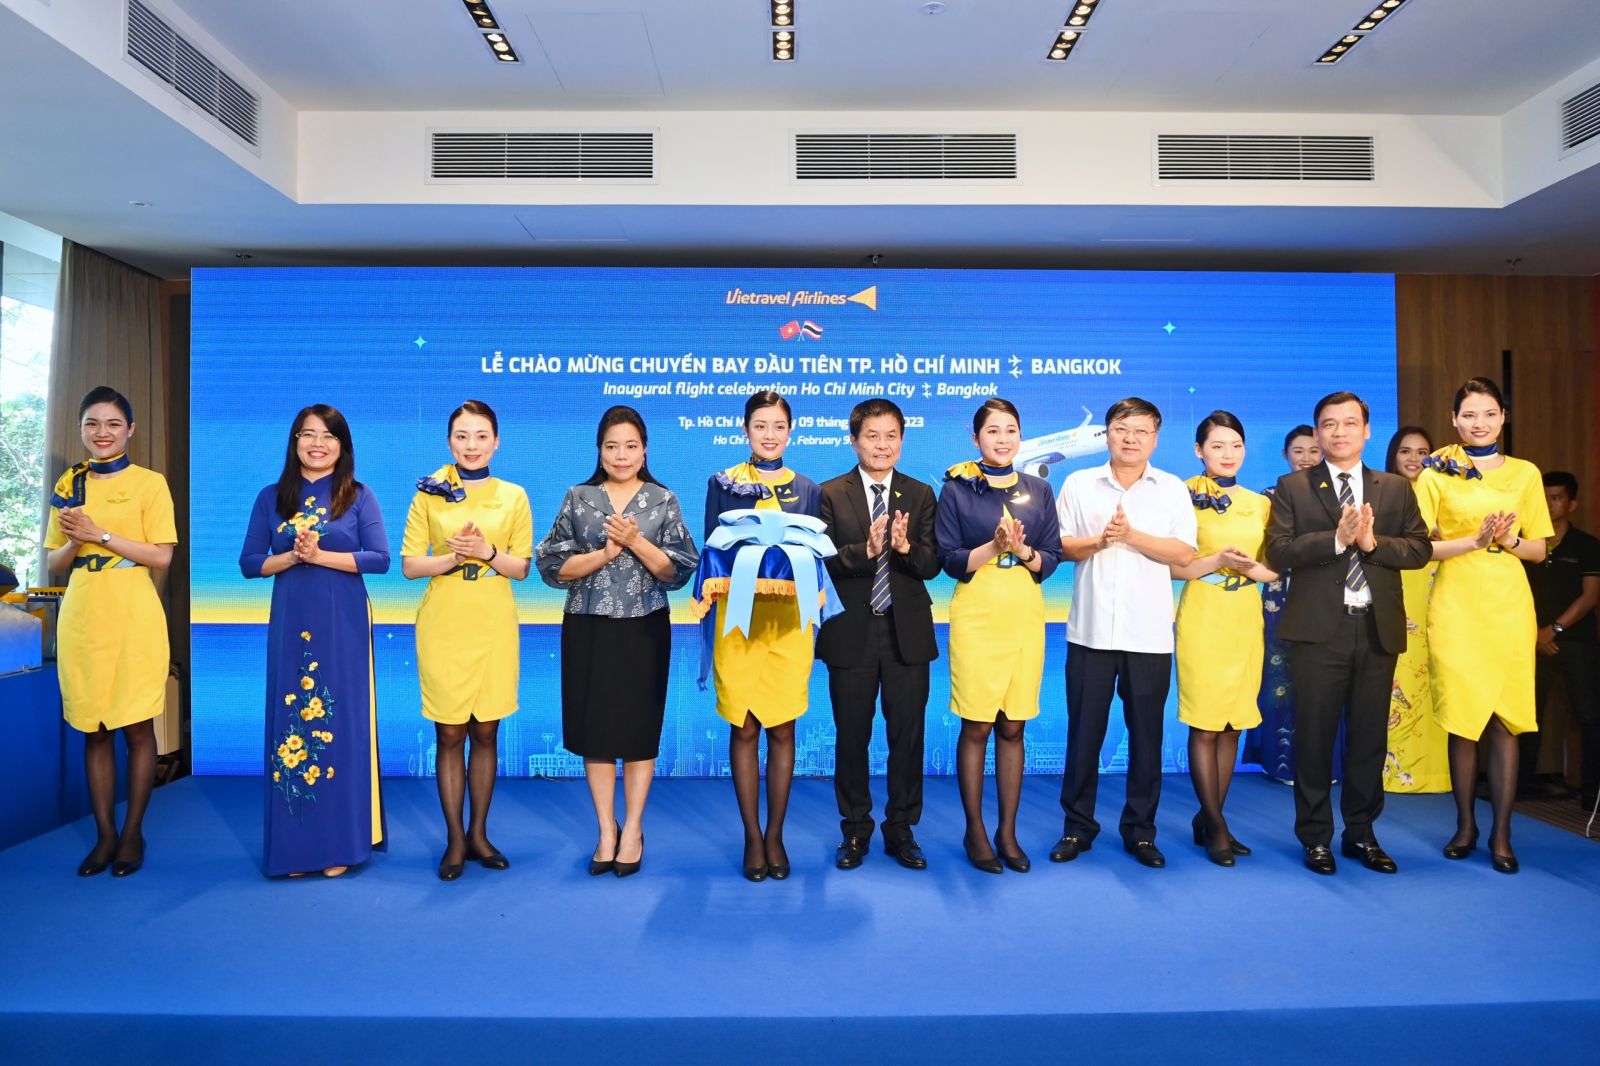 Vietravel Airlines khai trương đường bay quốc tế thành phố Hồ Chí Minh – Bangkok